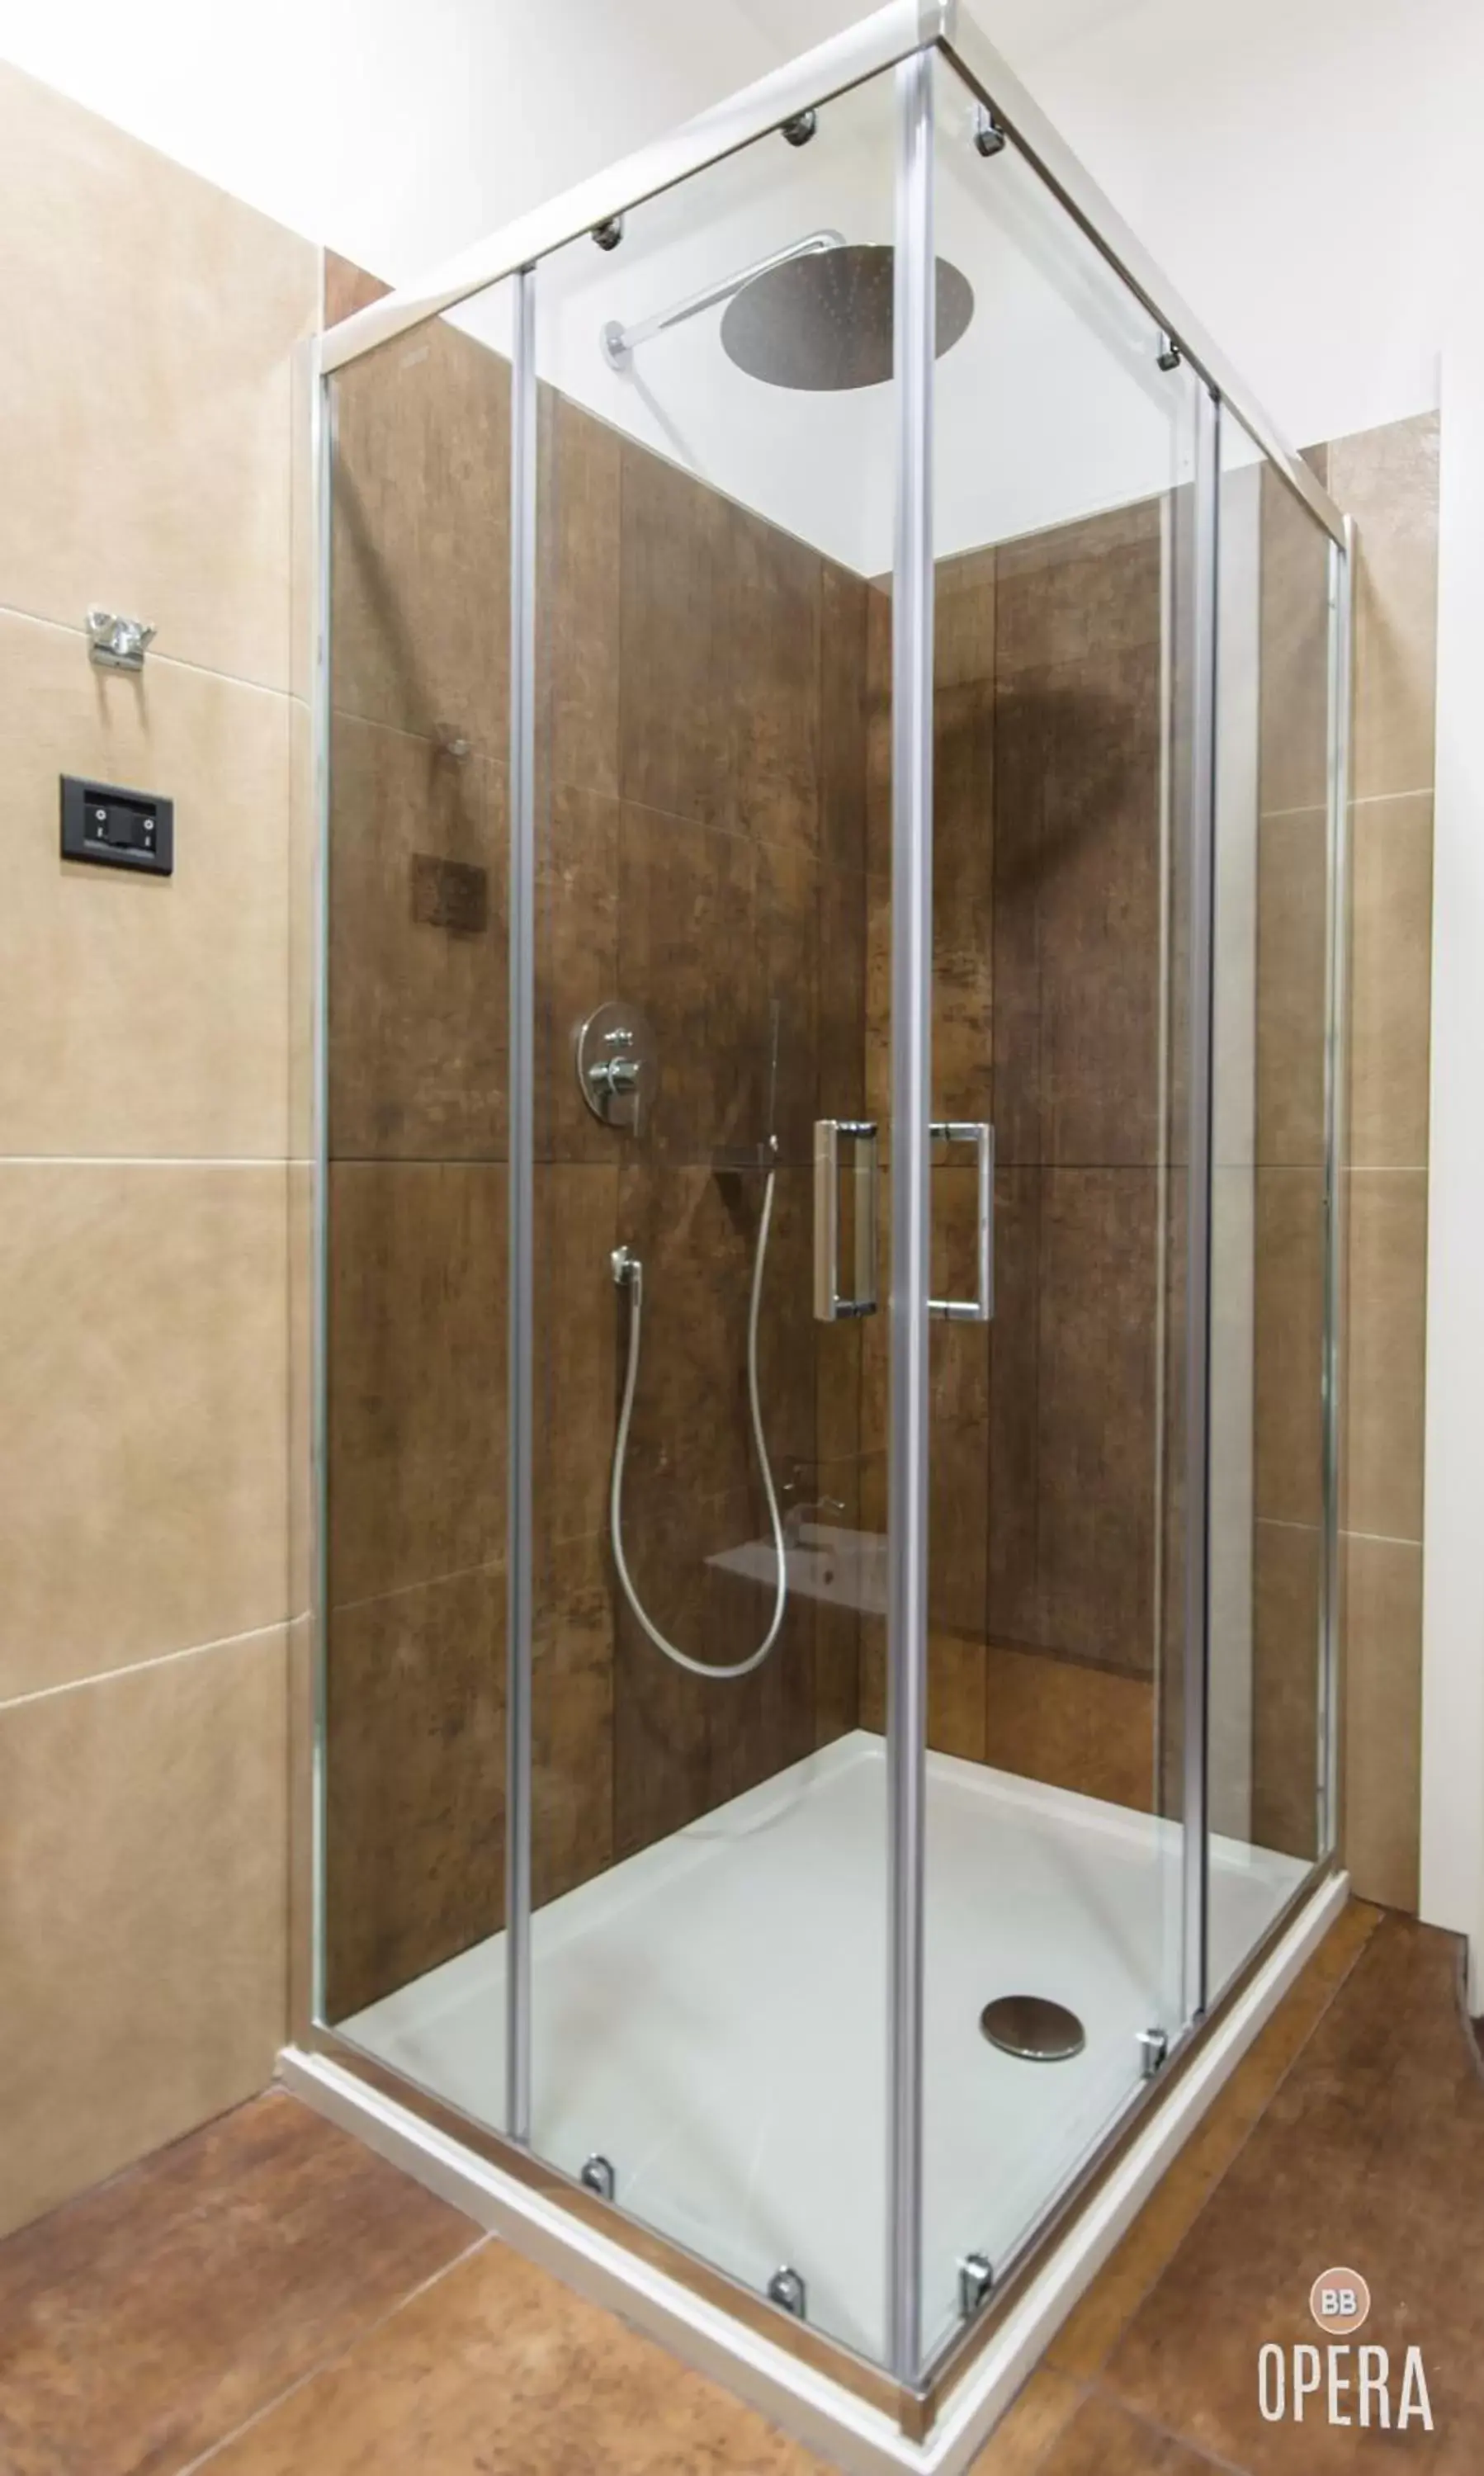 Shower, Bathroom in Opera B&B